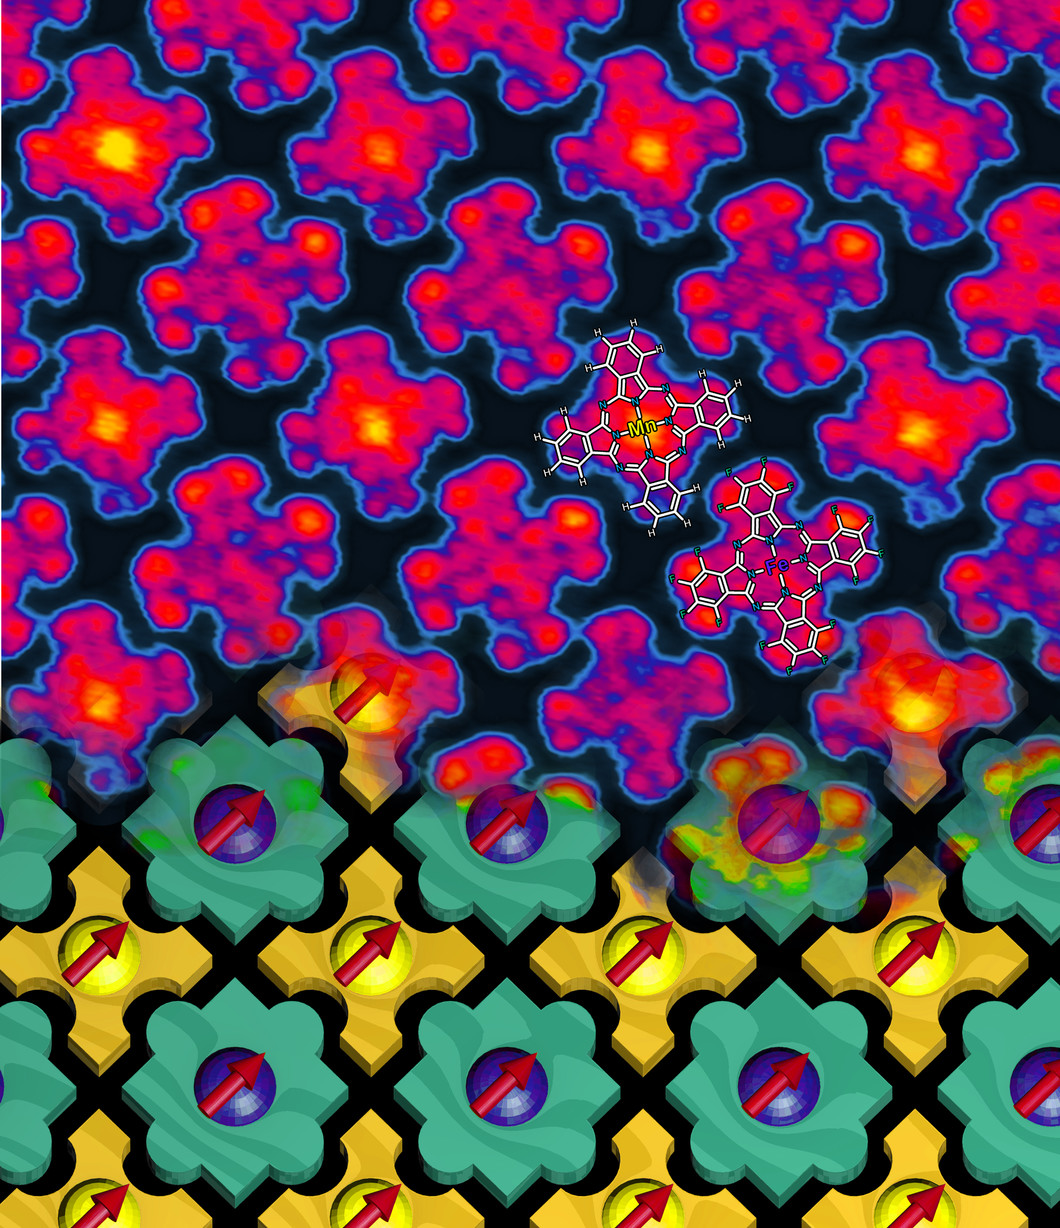 Das magnetische Nanoschachbrett. Oberer Teil: Abbildung der Moleküle mit einem Rastertunnelmikroskop. Bei zwei Molekülen ist die Molekülstruktur eingezeichnet. Unterer Teil: schematische Darstellung der Selbstorganisation der Moleküle – sie passen wie Puzzleteile zusammen und fügen sich so immer abwechselnd aneinander.